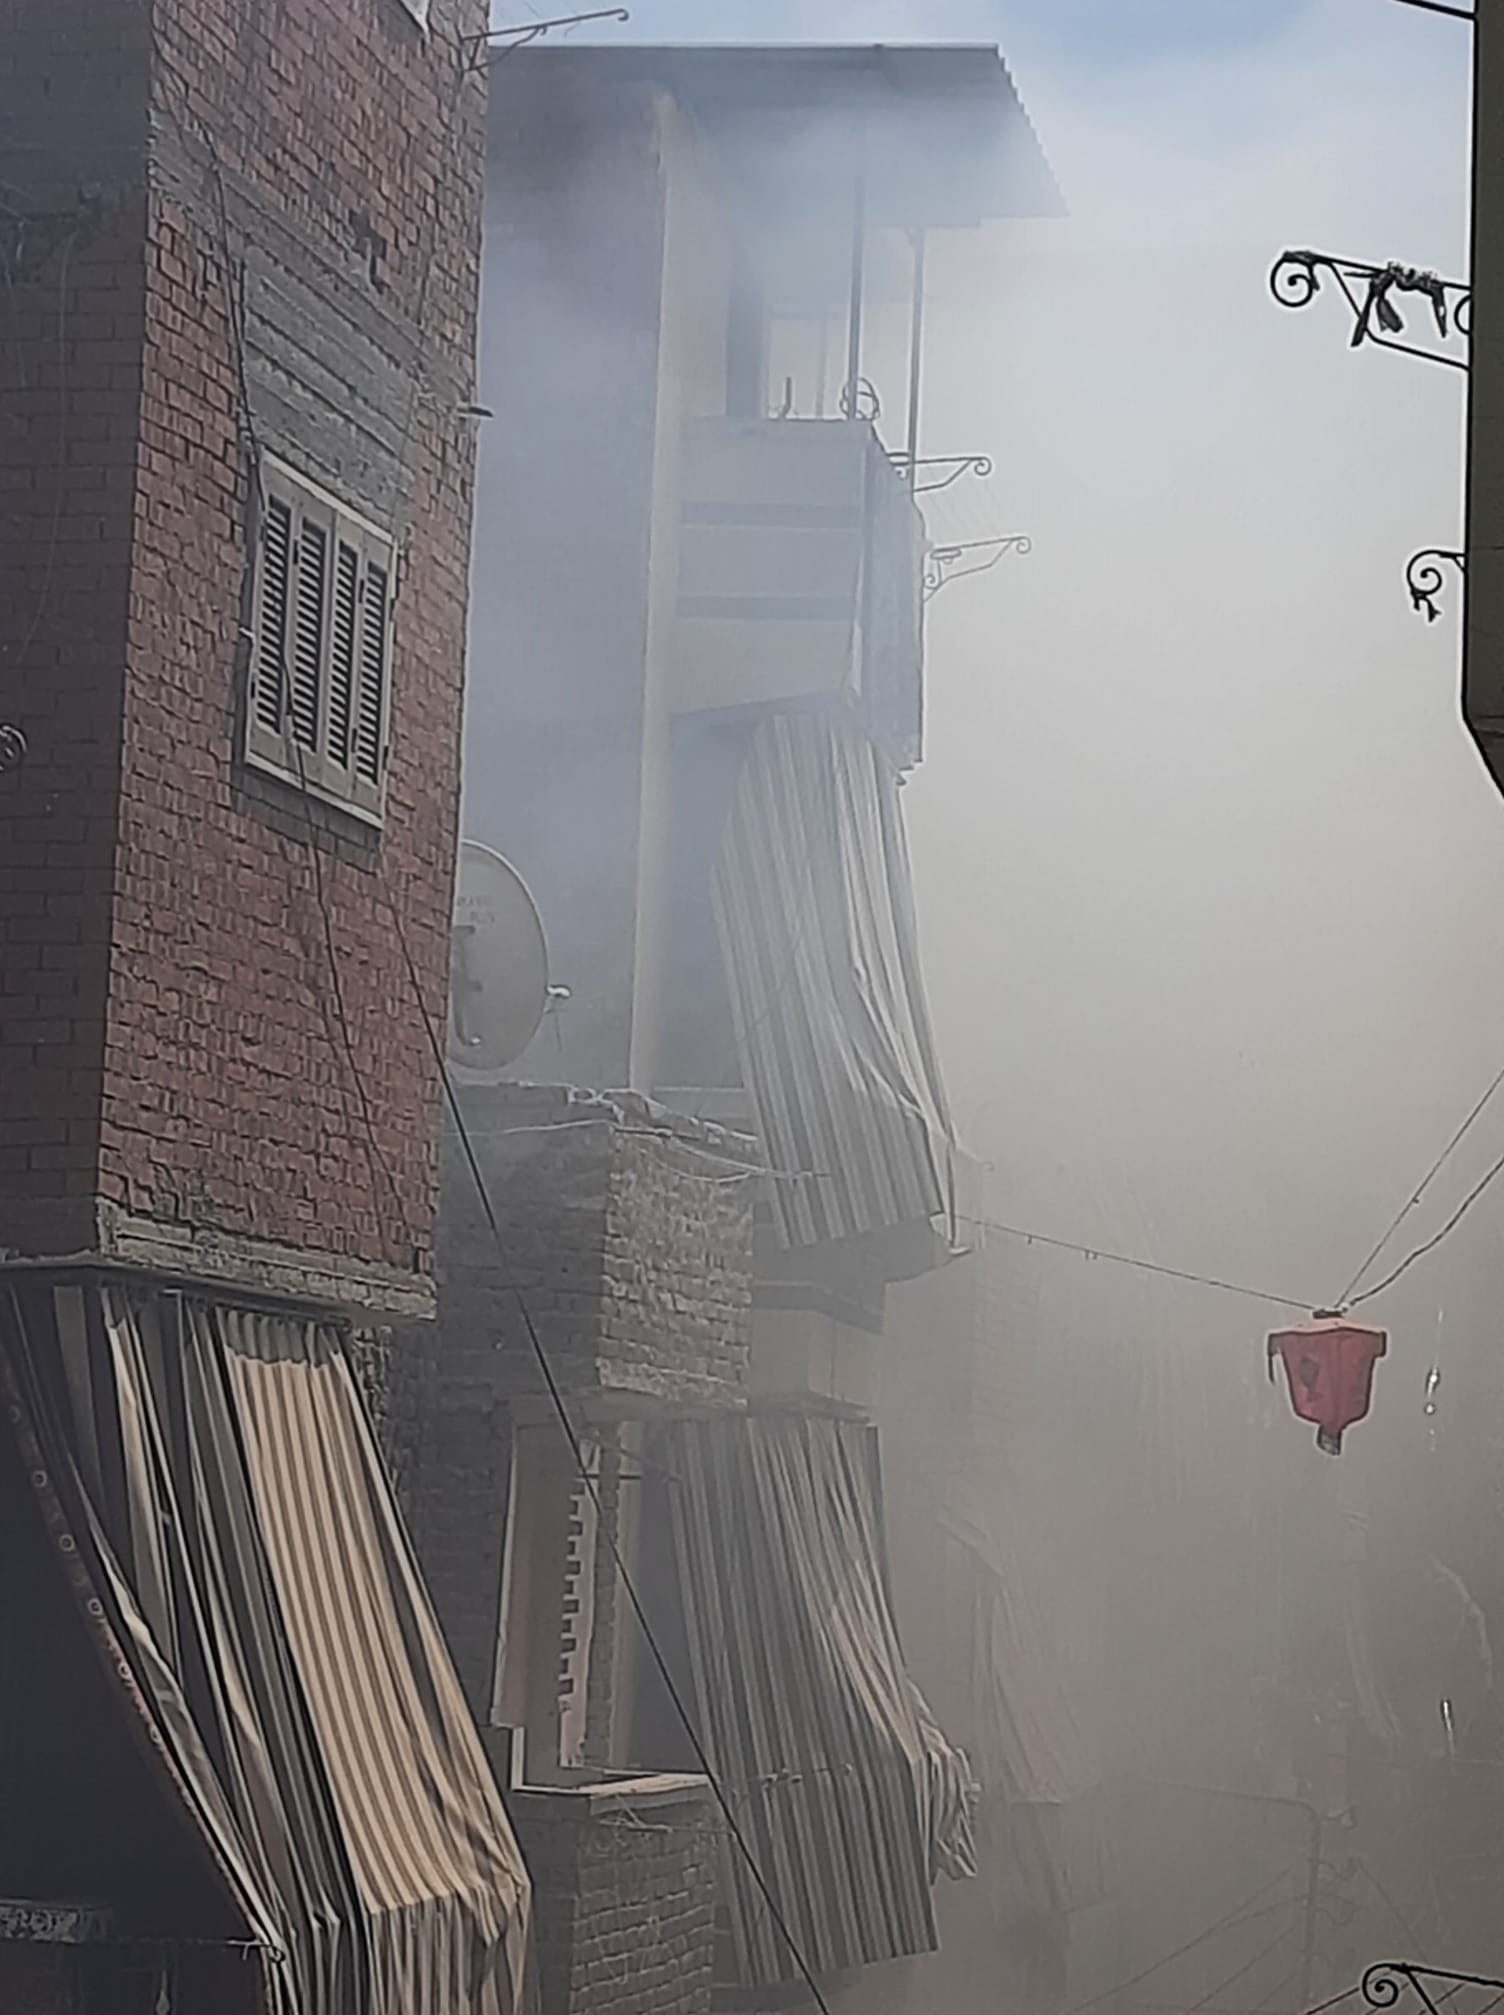 الدخان الكثيف يغطي المنطقة